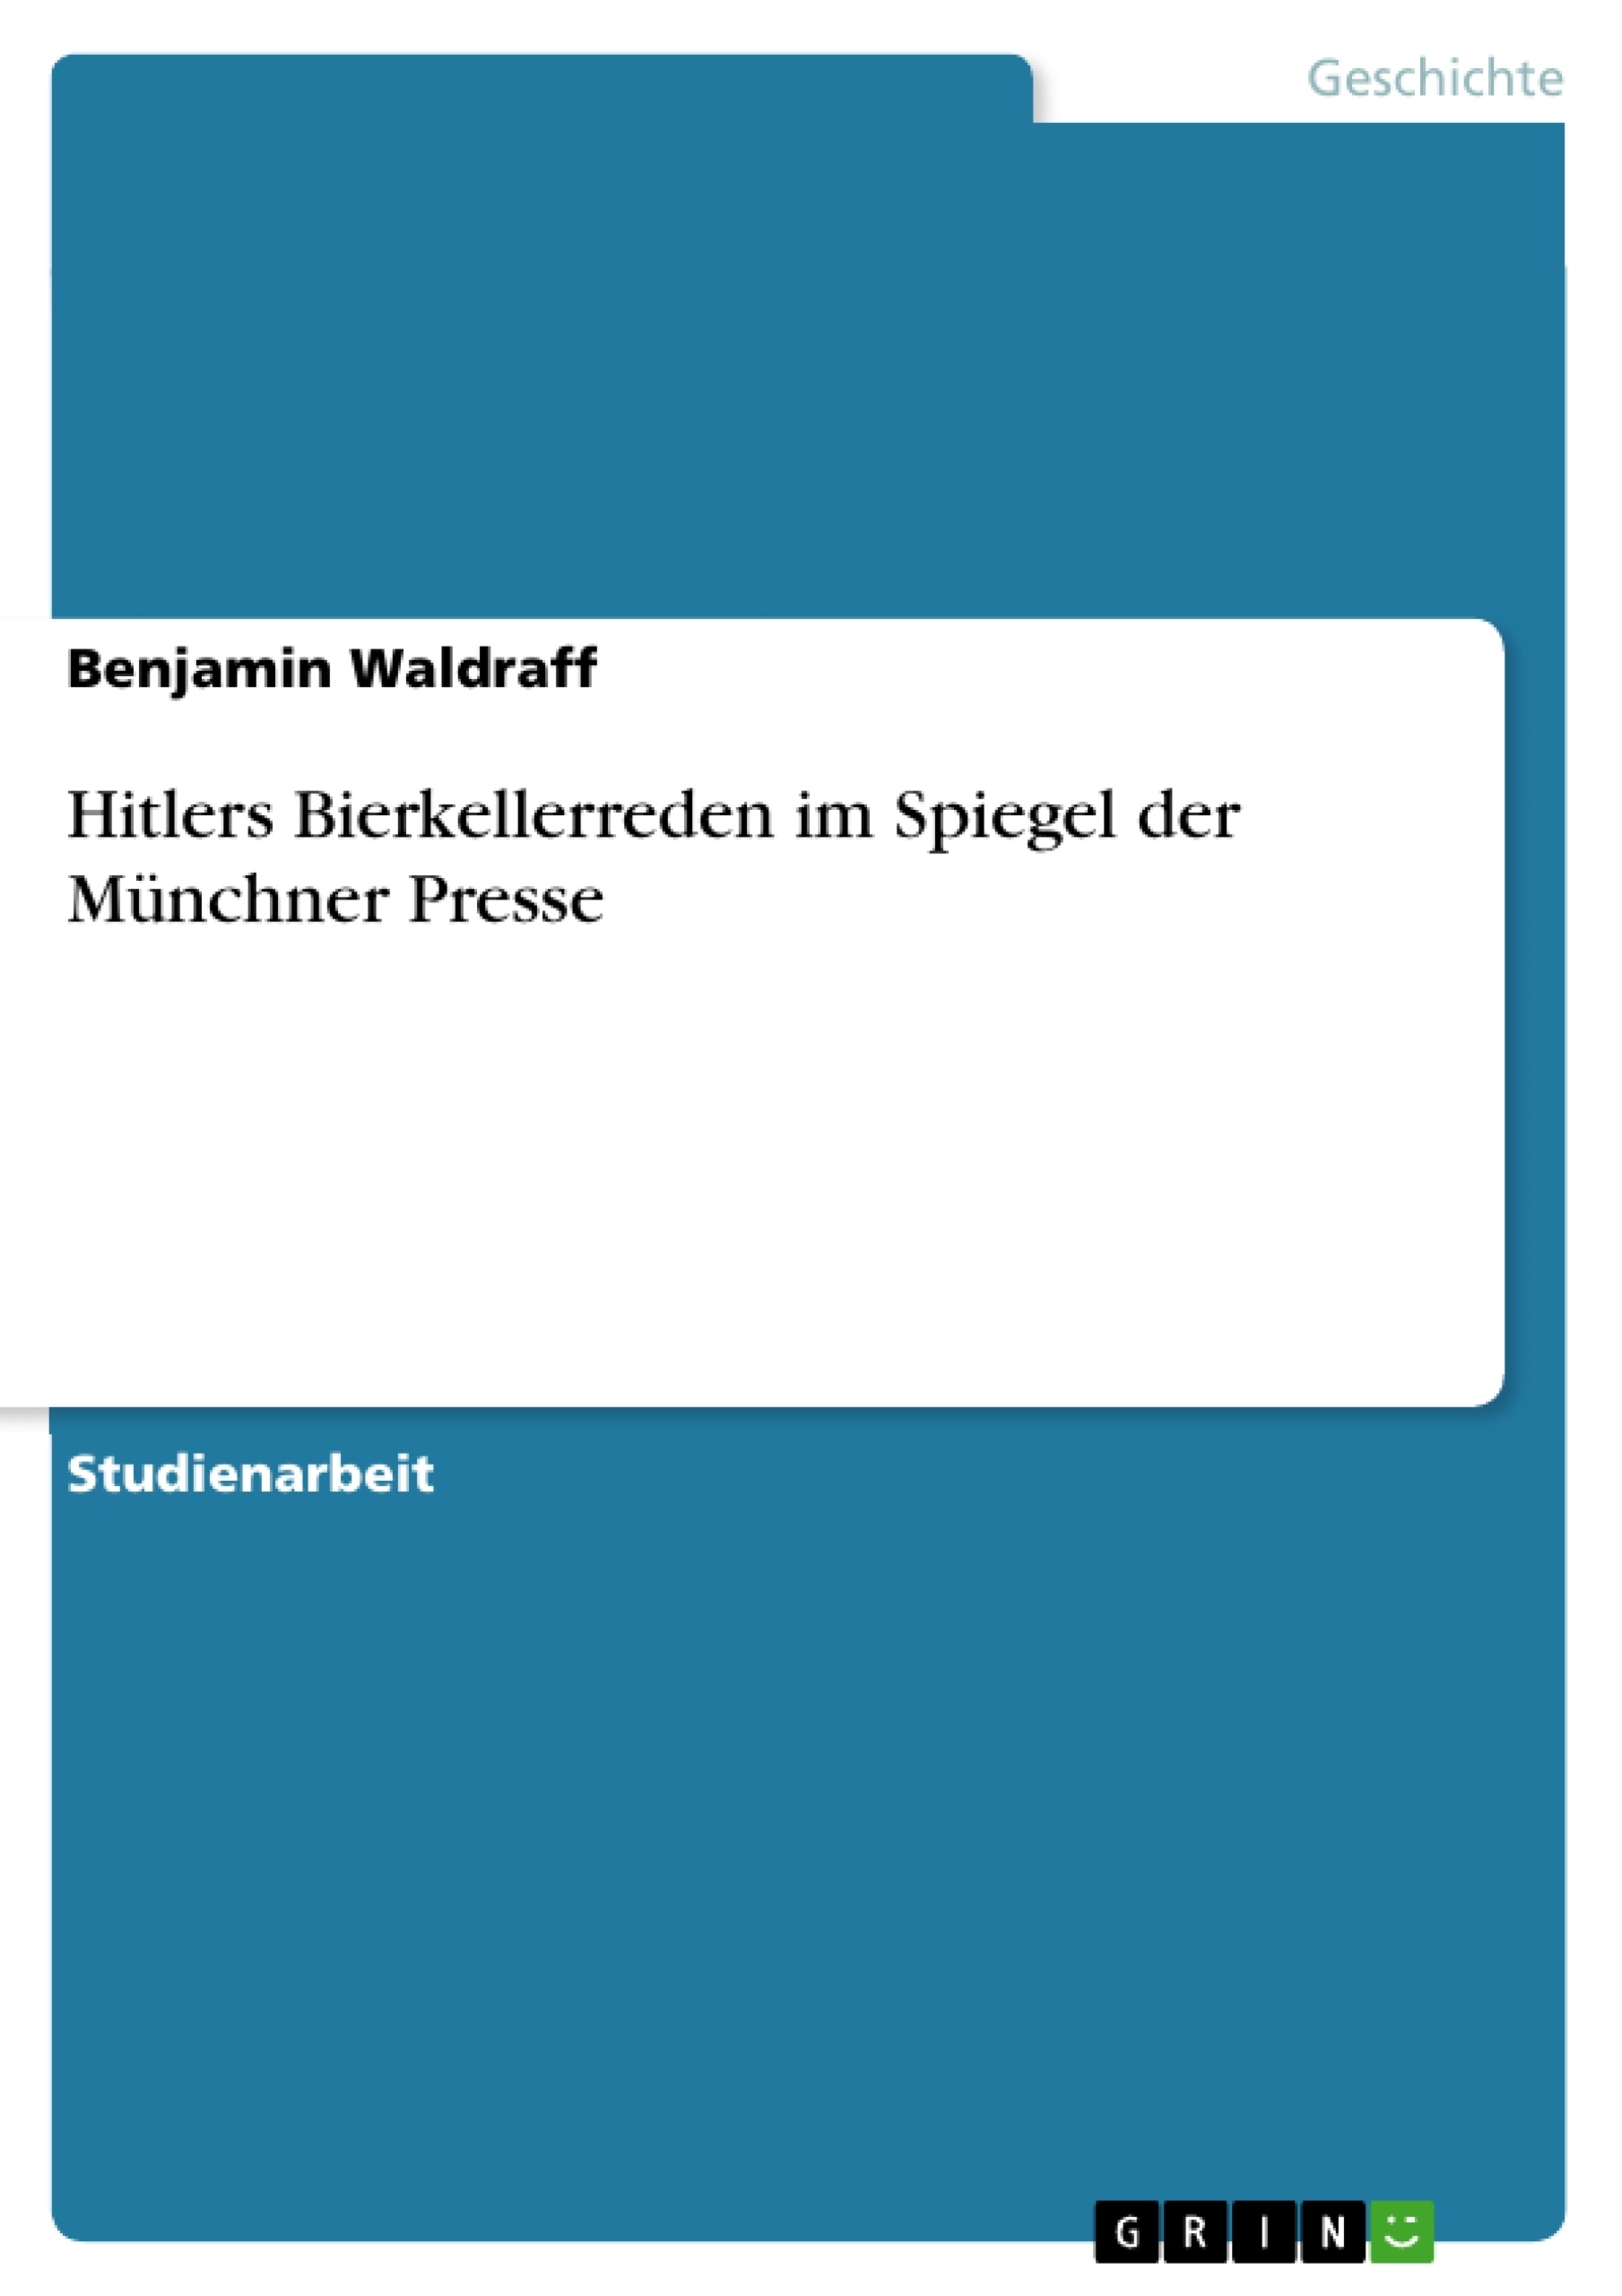 Título: Hitlers Bierkellerreden im Spiegel der Münchner Presse